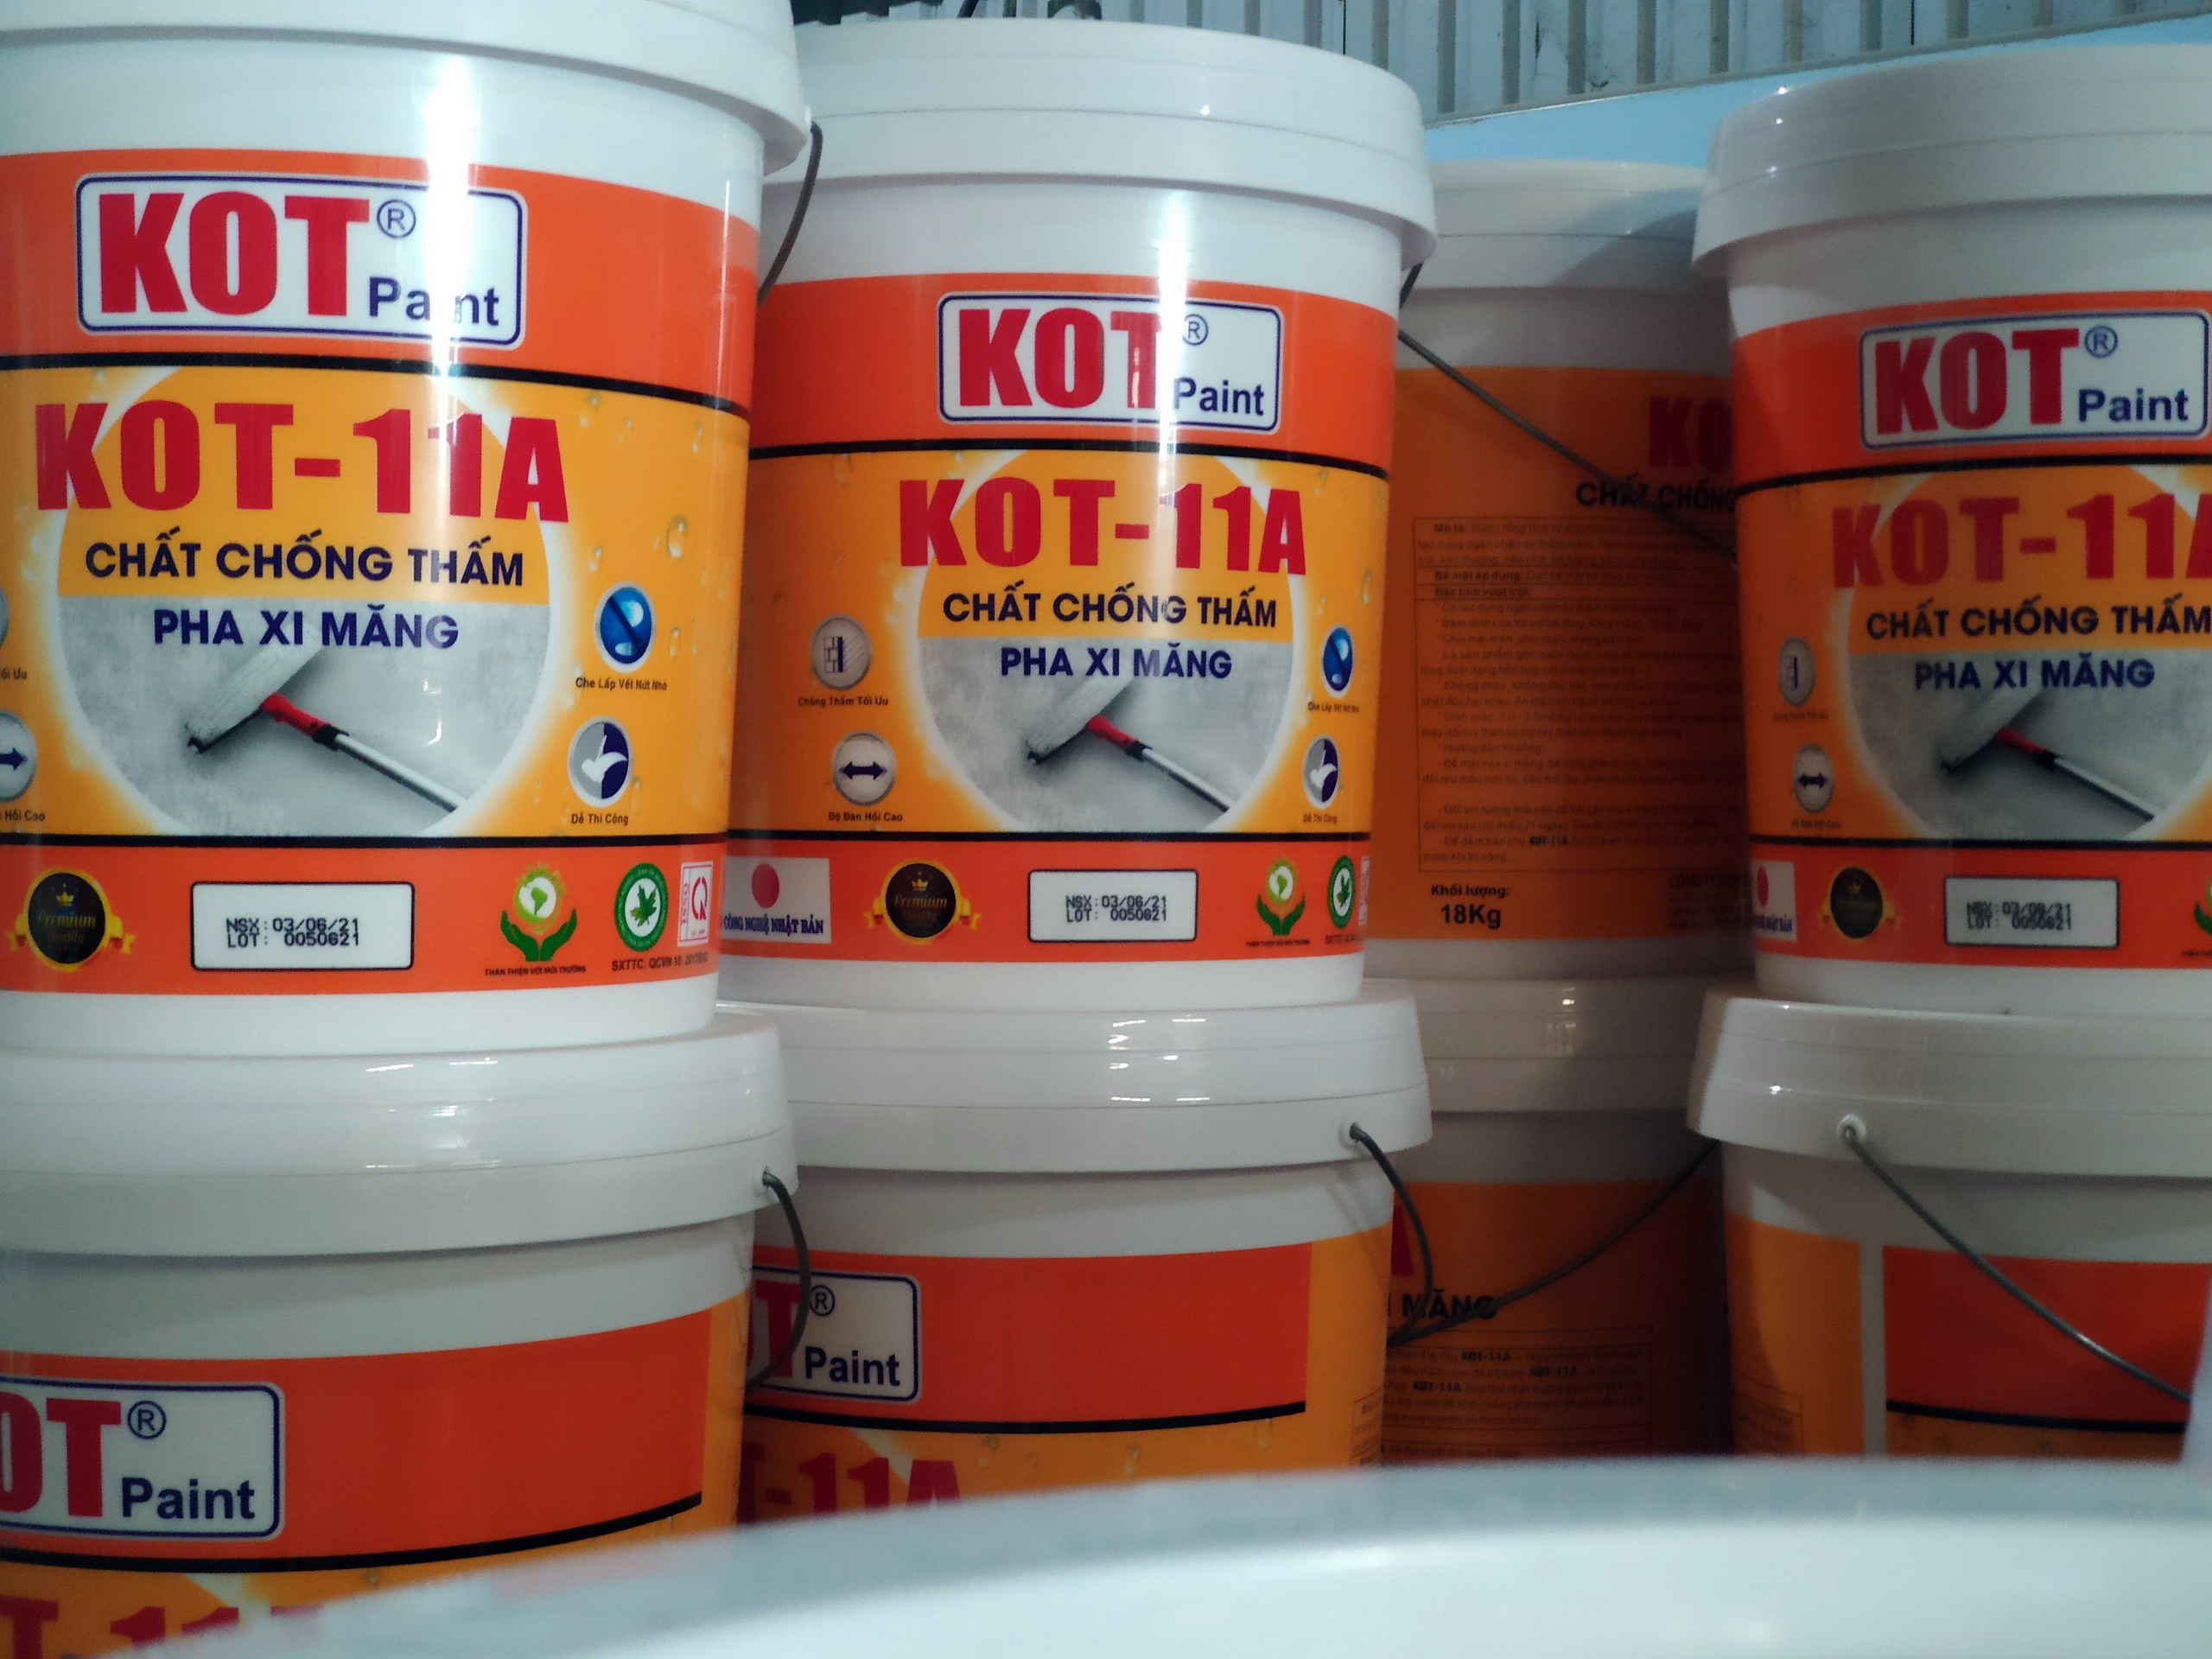 Sản phẩm chống thấm KOT-11A